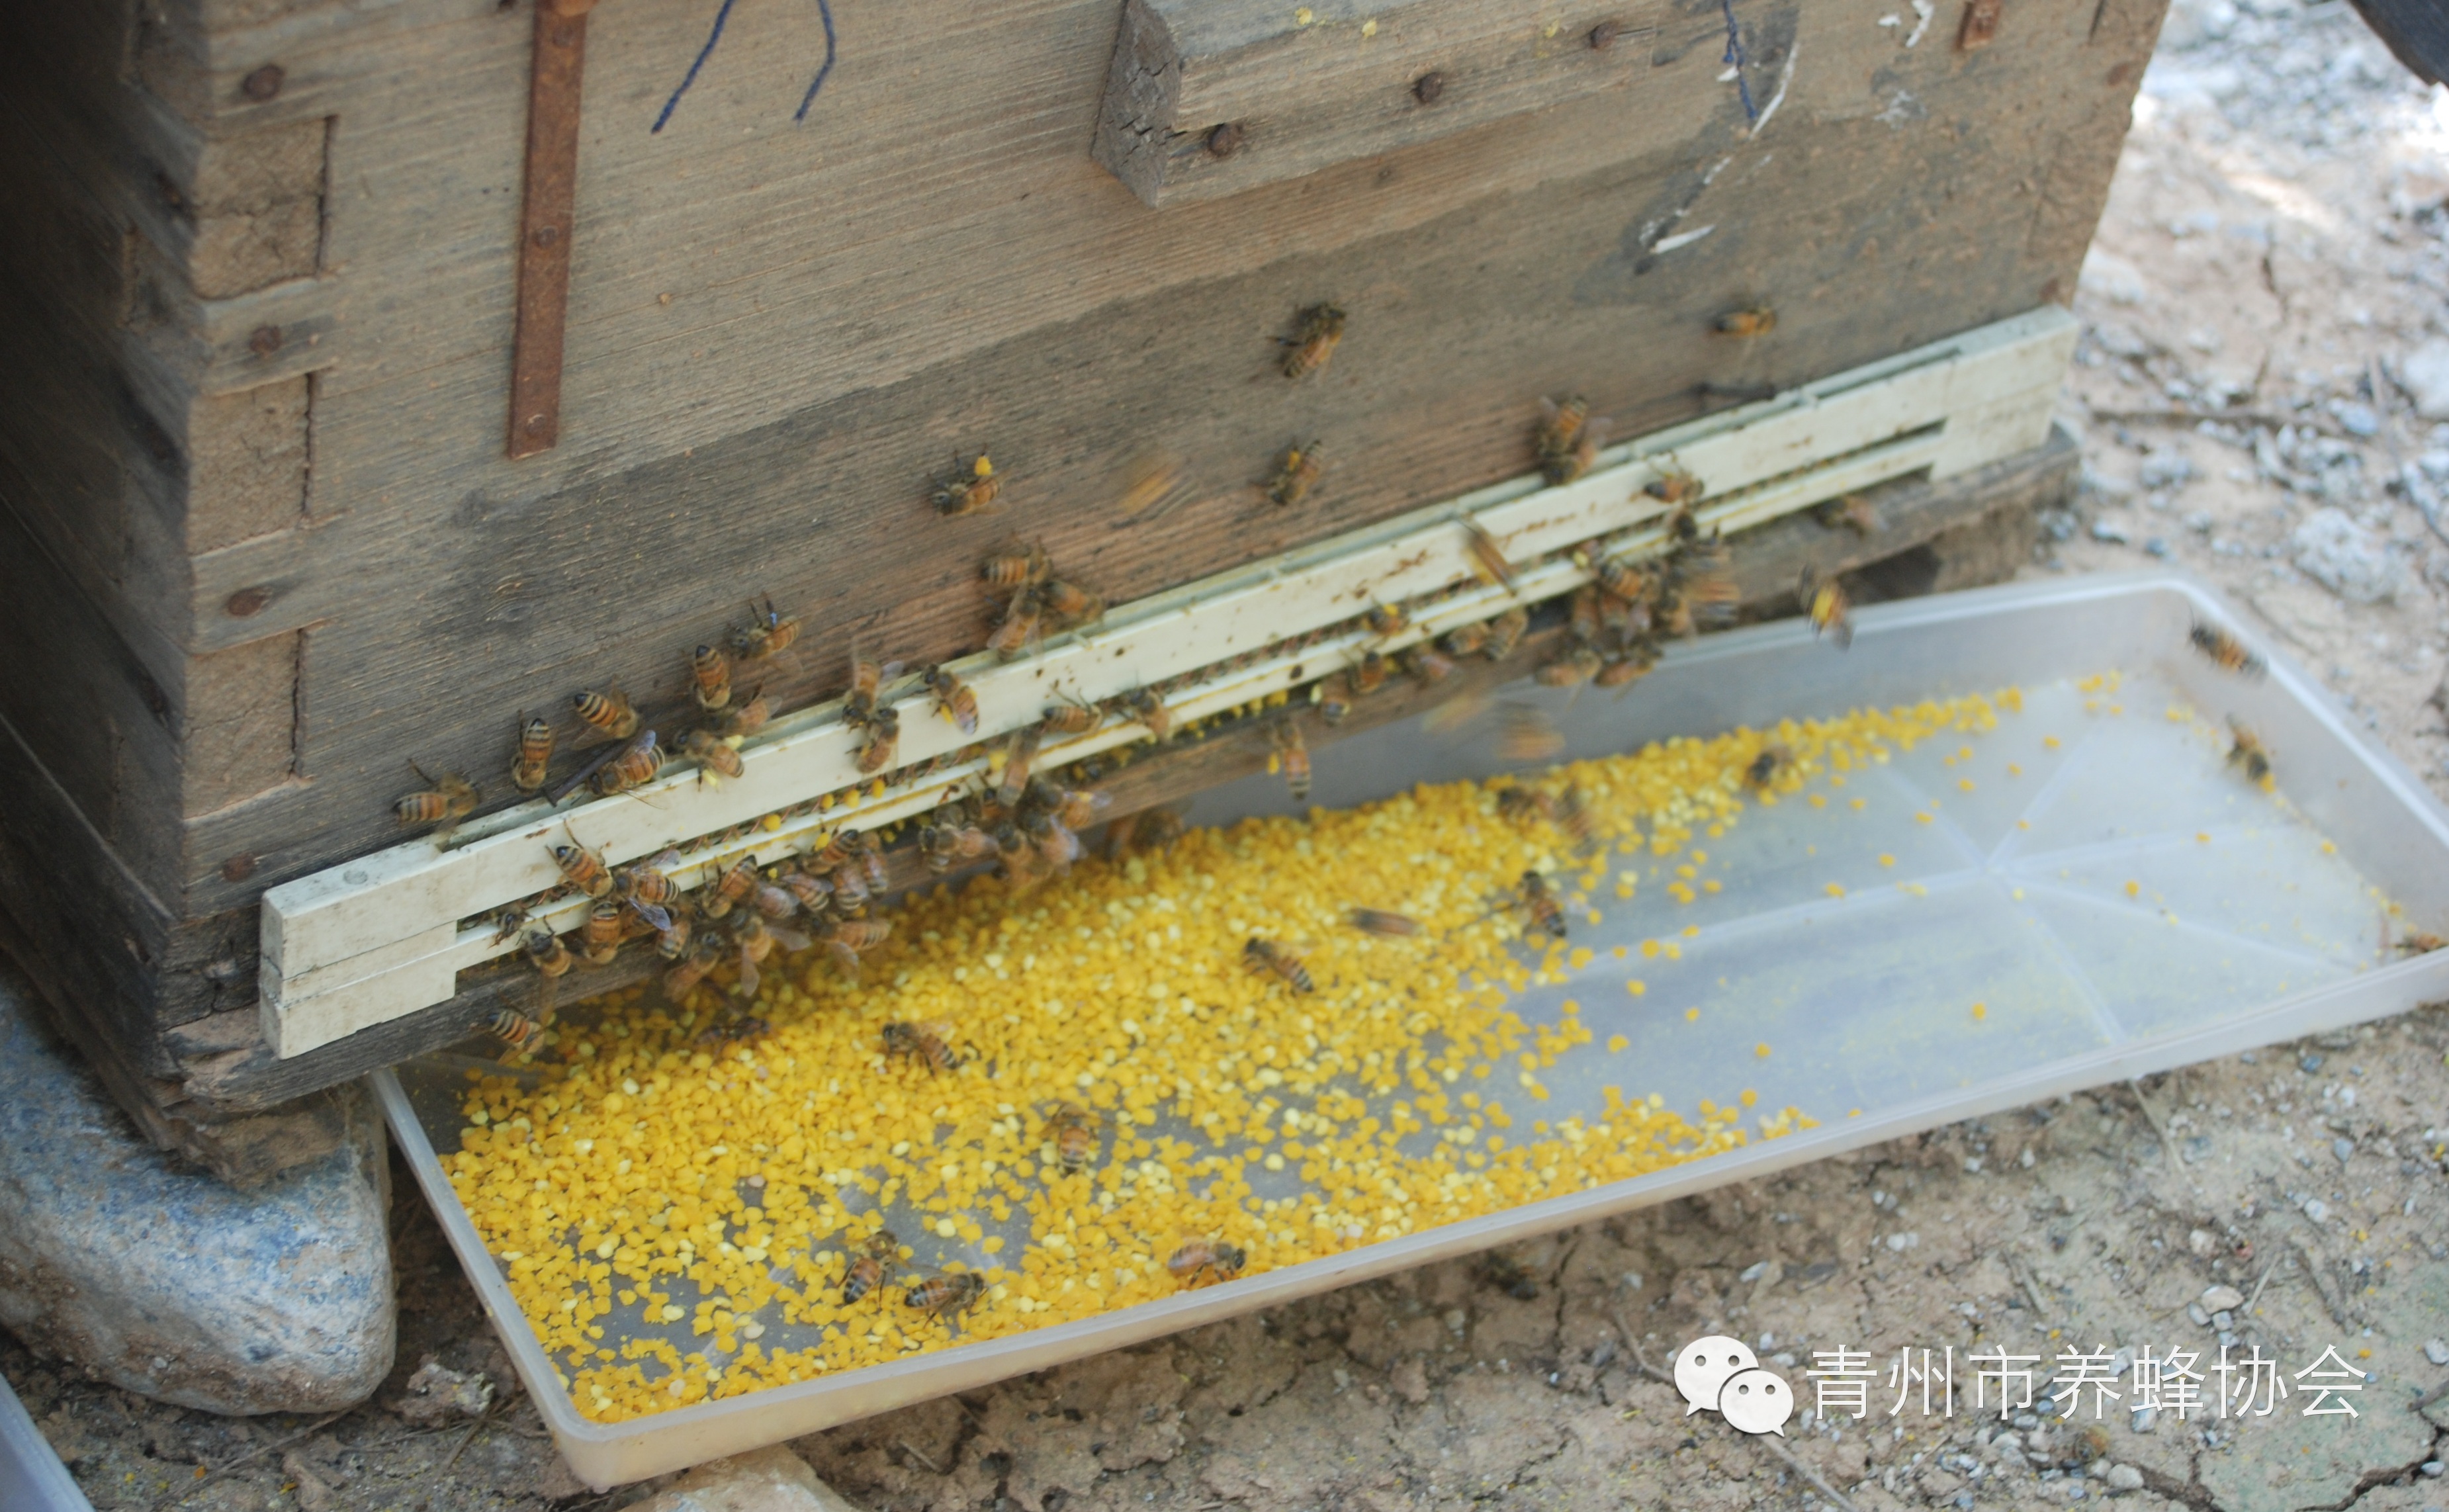 蜂花粉——浓缩的营养库